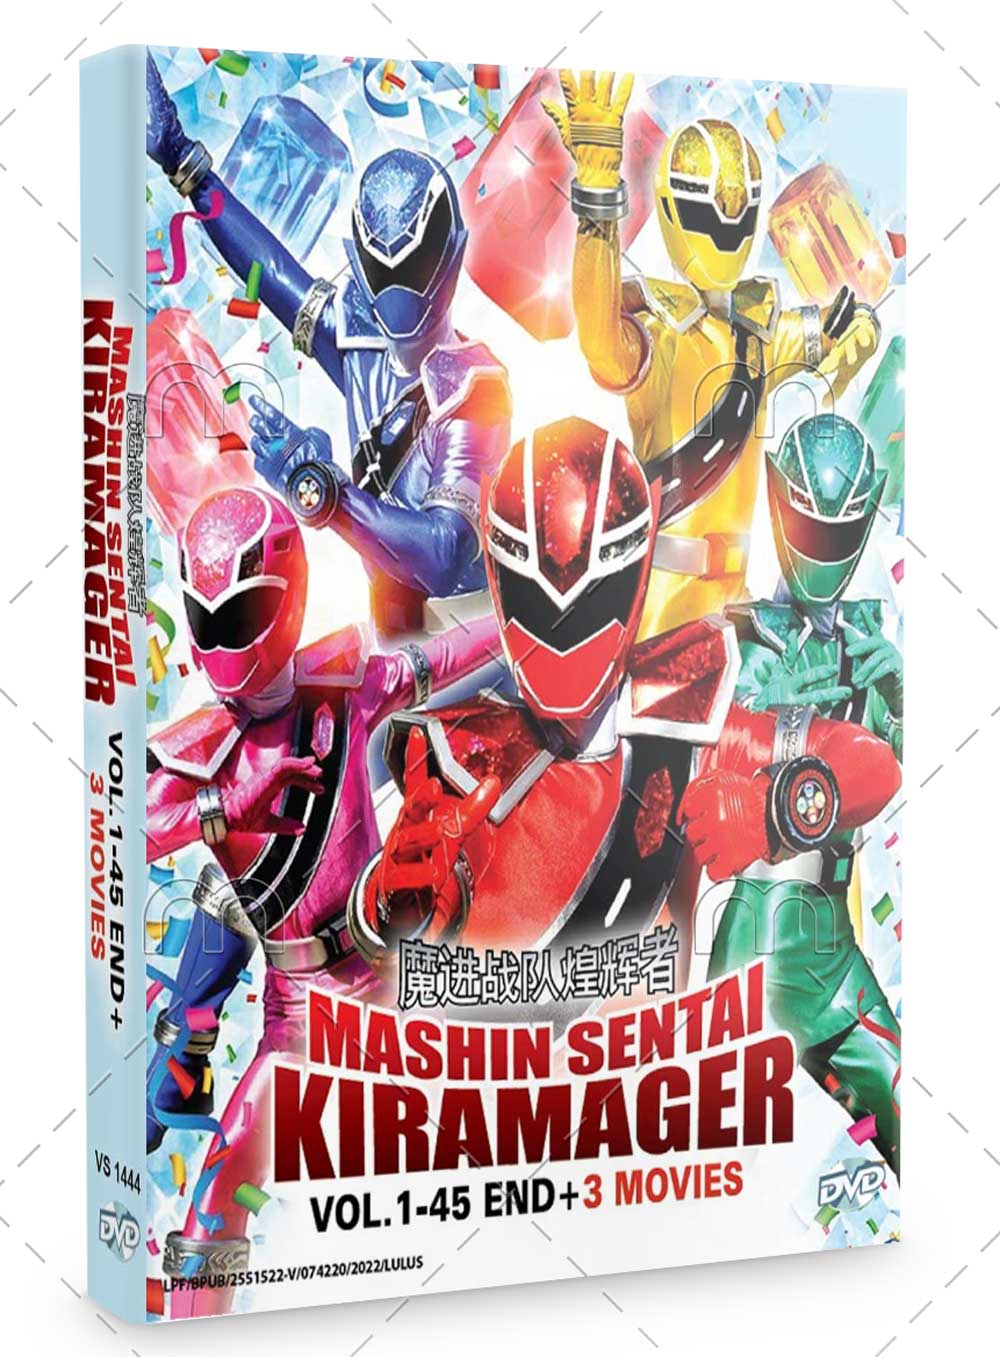 Mashin Sentai Kiramager Episode 1-45 + 3 Movies (DVD) (2020) Anime